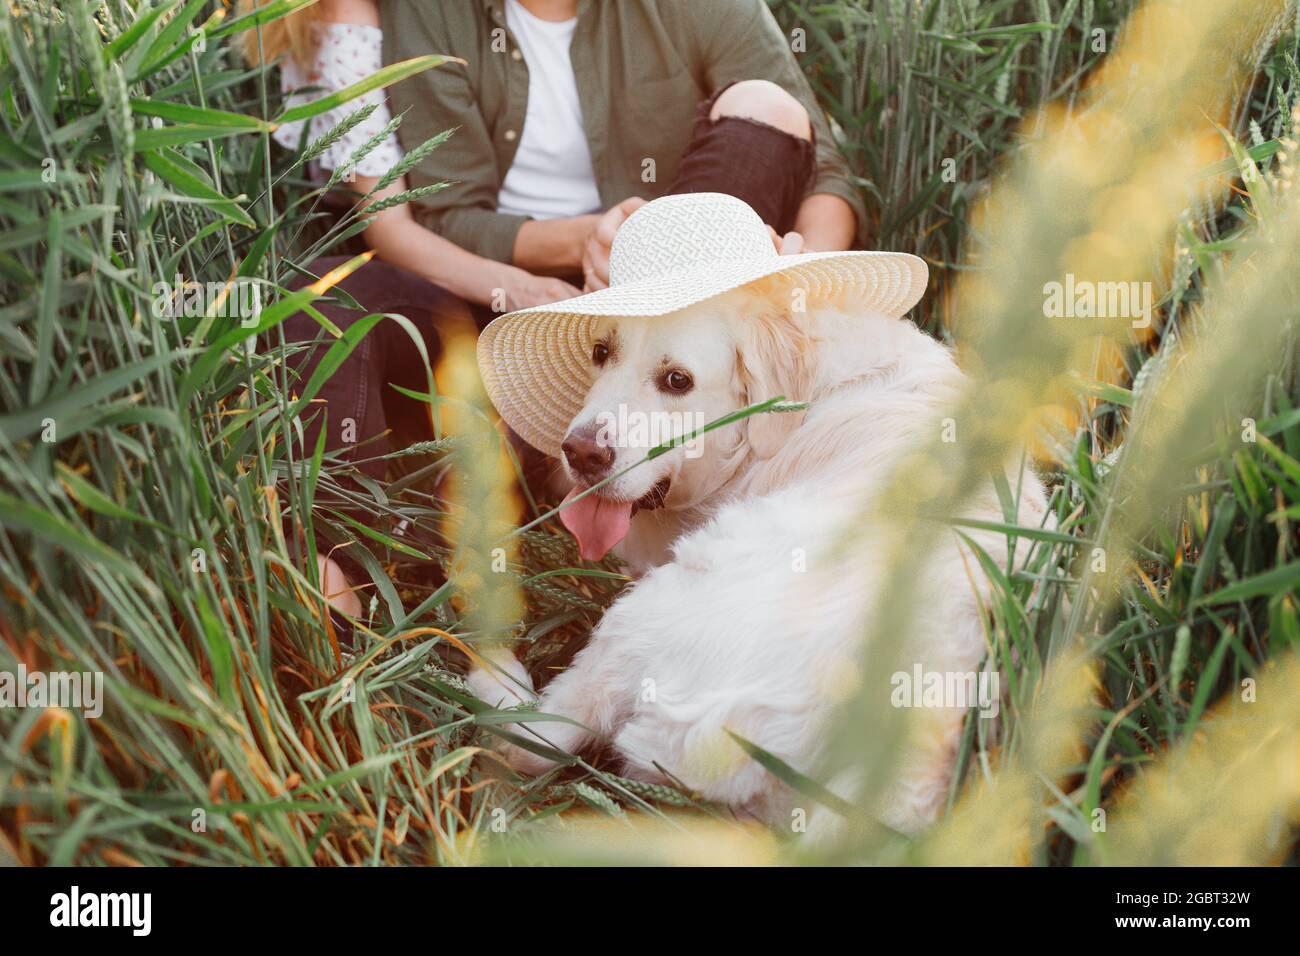 Hund sieht toll aus in großen weißen Hut, auf von seinen Besitzern am Sommerabend auf dem Feld unter dem Gras gesetzt. Liebe und Zärtlichkeit. Schöne Momente des Lebens. Pe Stockfoto